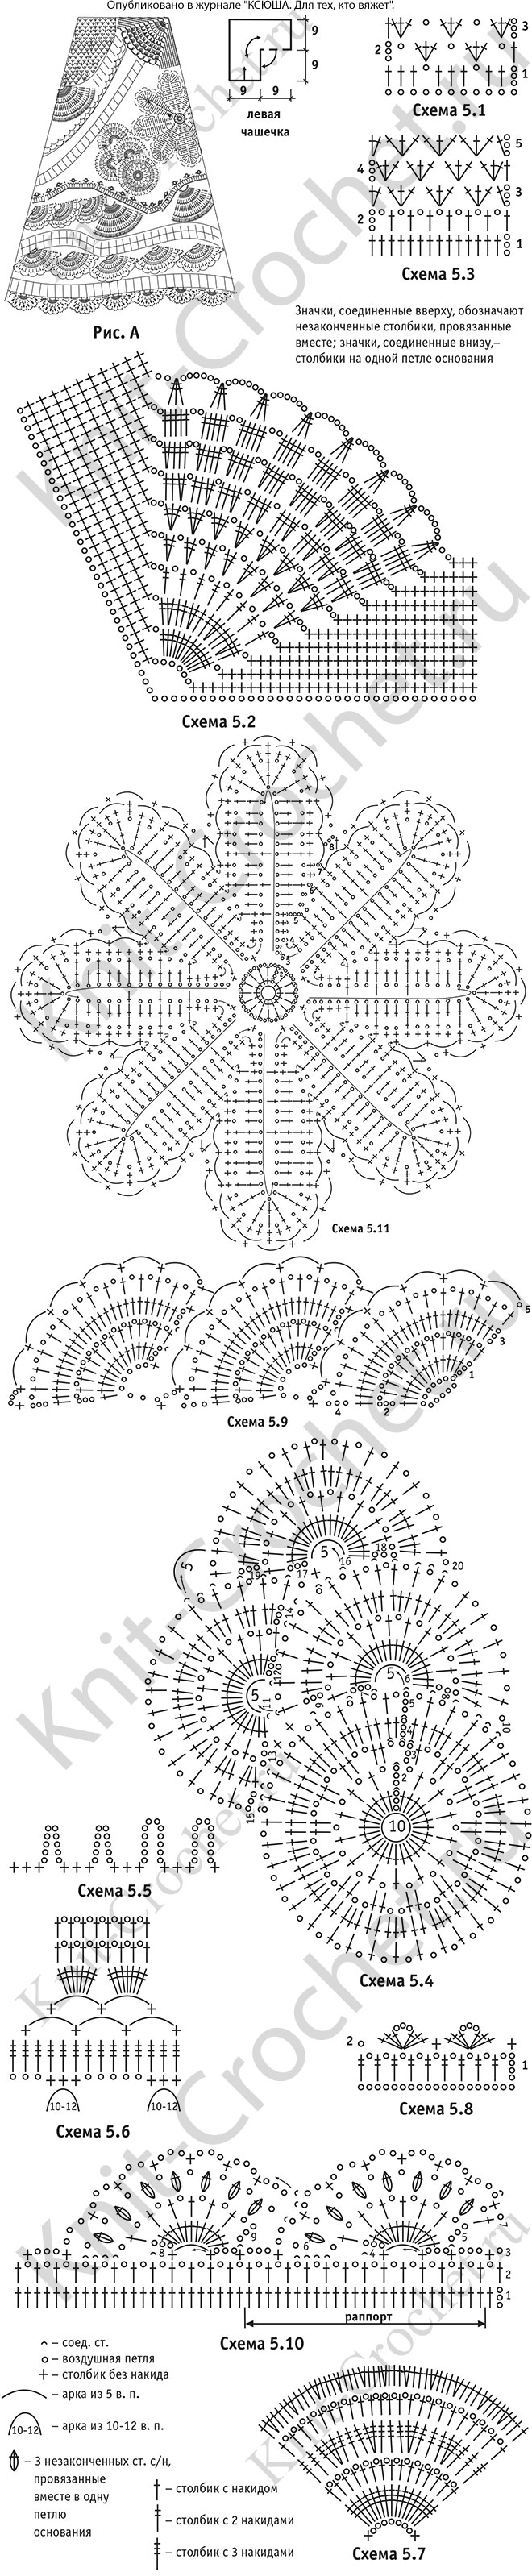 Выкройка, схемы узоров с описанием вязания крючком платья из отдельных мотивов и фрагментов размера 44-46.